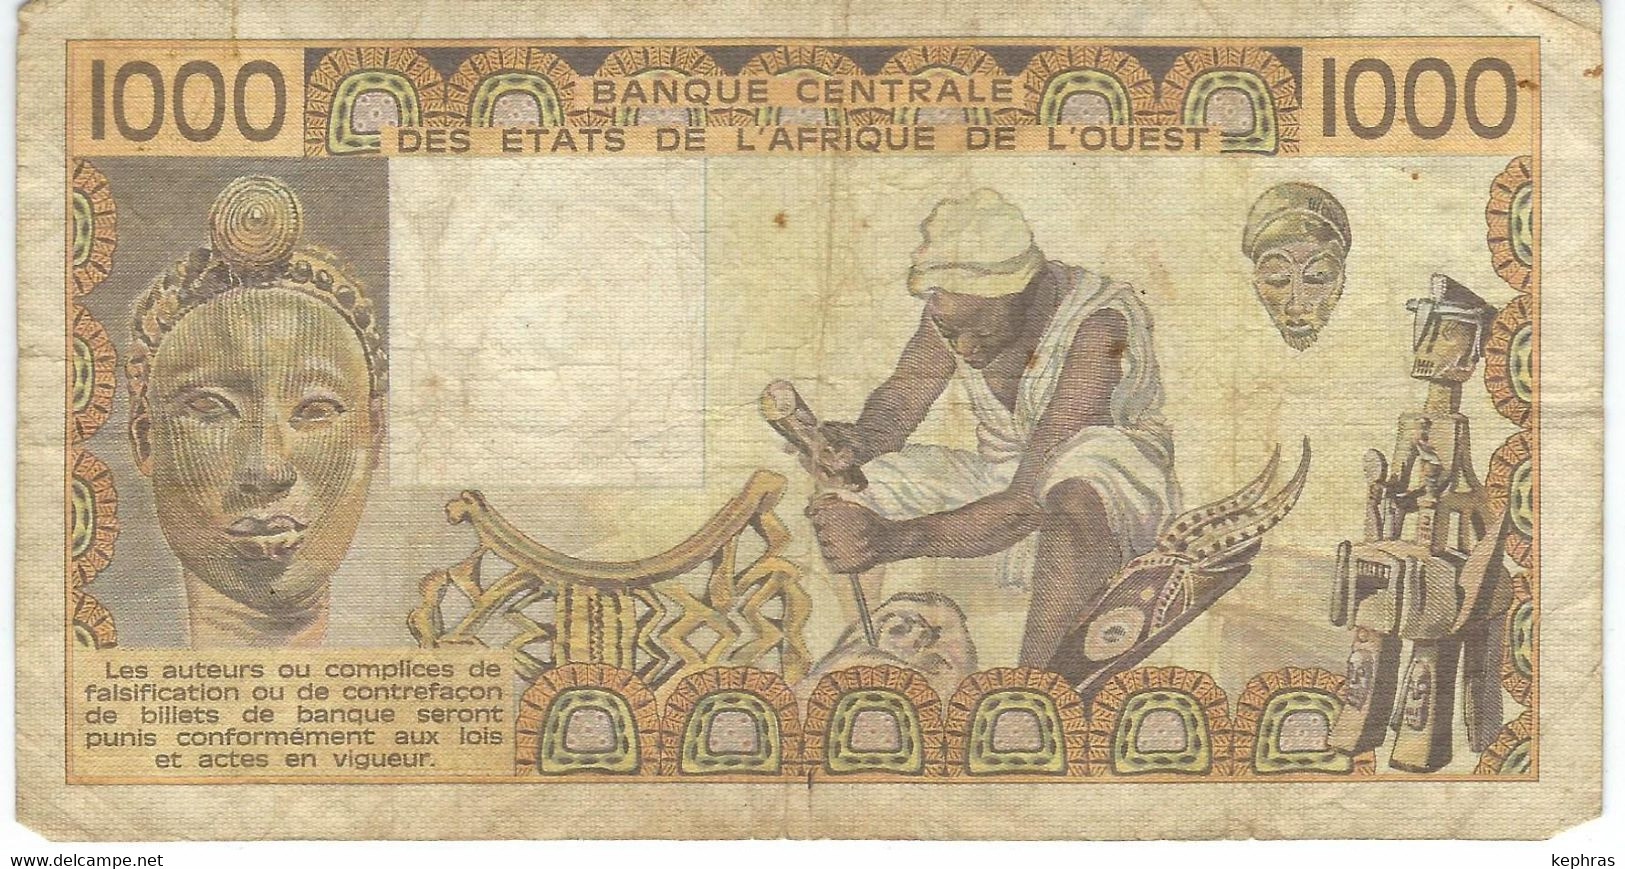 Banque Centrale Etats Afrique De L'Ouest - 1000 Francs - 1981 - Dans L'état - Other - Africa